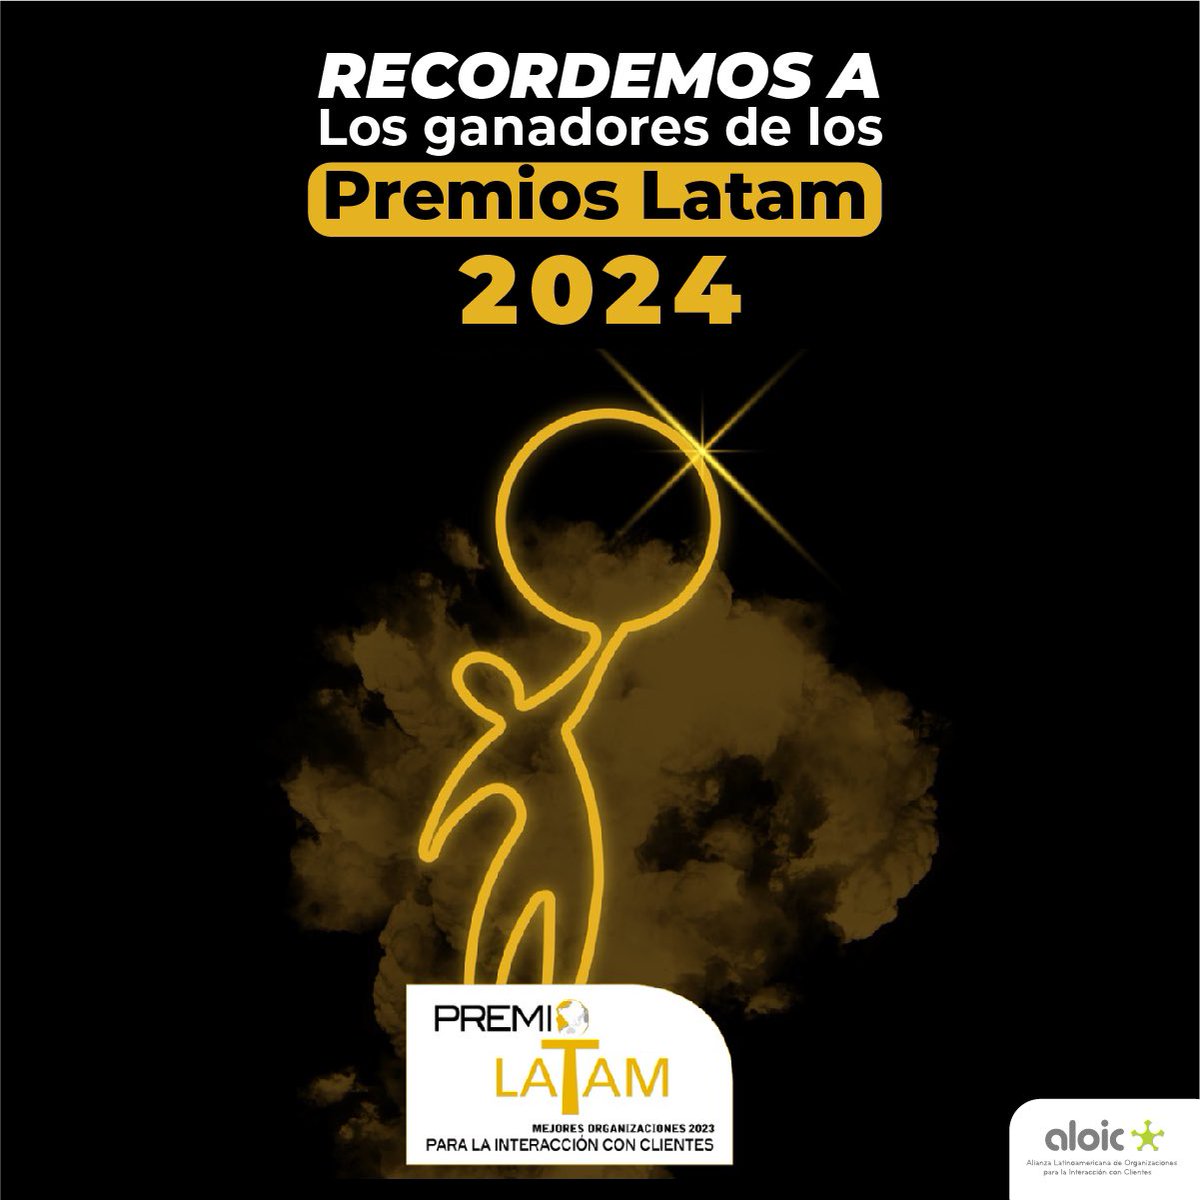 Recordemos a los ganadores de los Premios LATAM 2024, destacados por su excelencia y reconocidos como las mejores compañías en el ámbito de la Relación con Clientes a nivel Latinoamericano [Abro hilo]